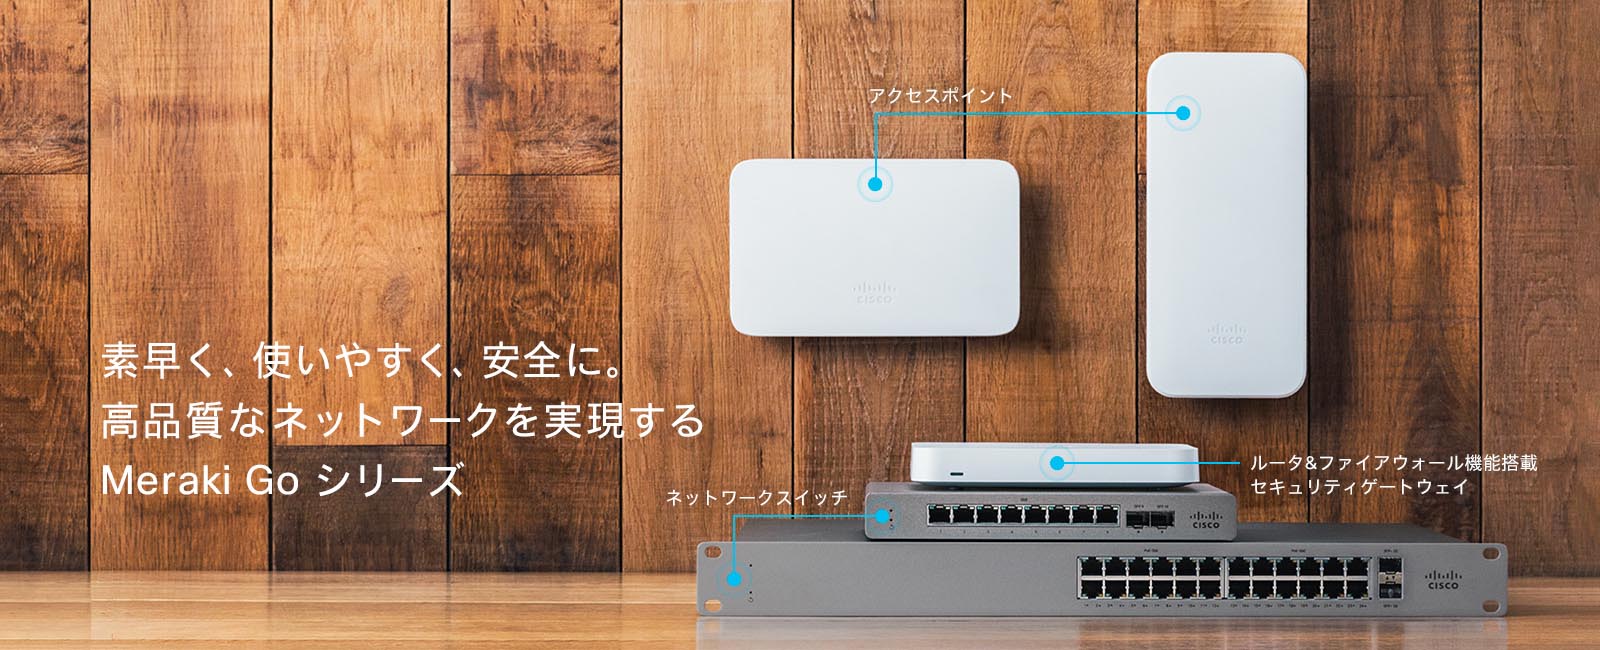 【超安い】 Cisco Meraki GO 無線LANアクセスポイント PC周辺機器